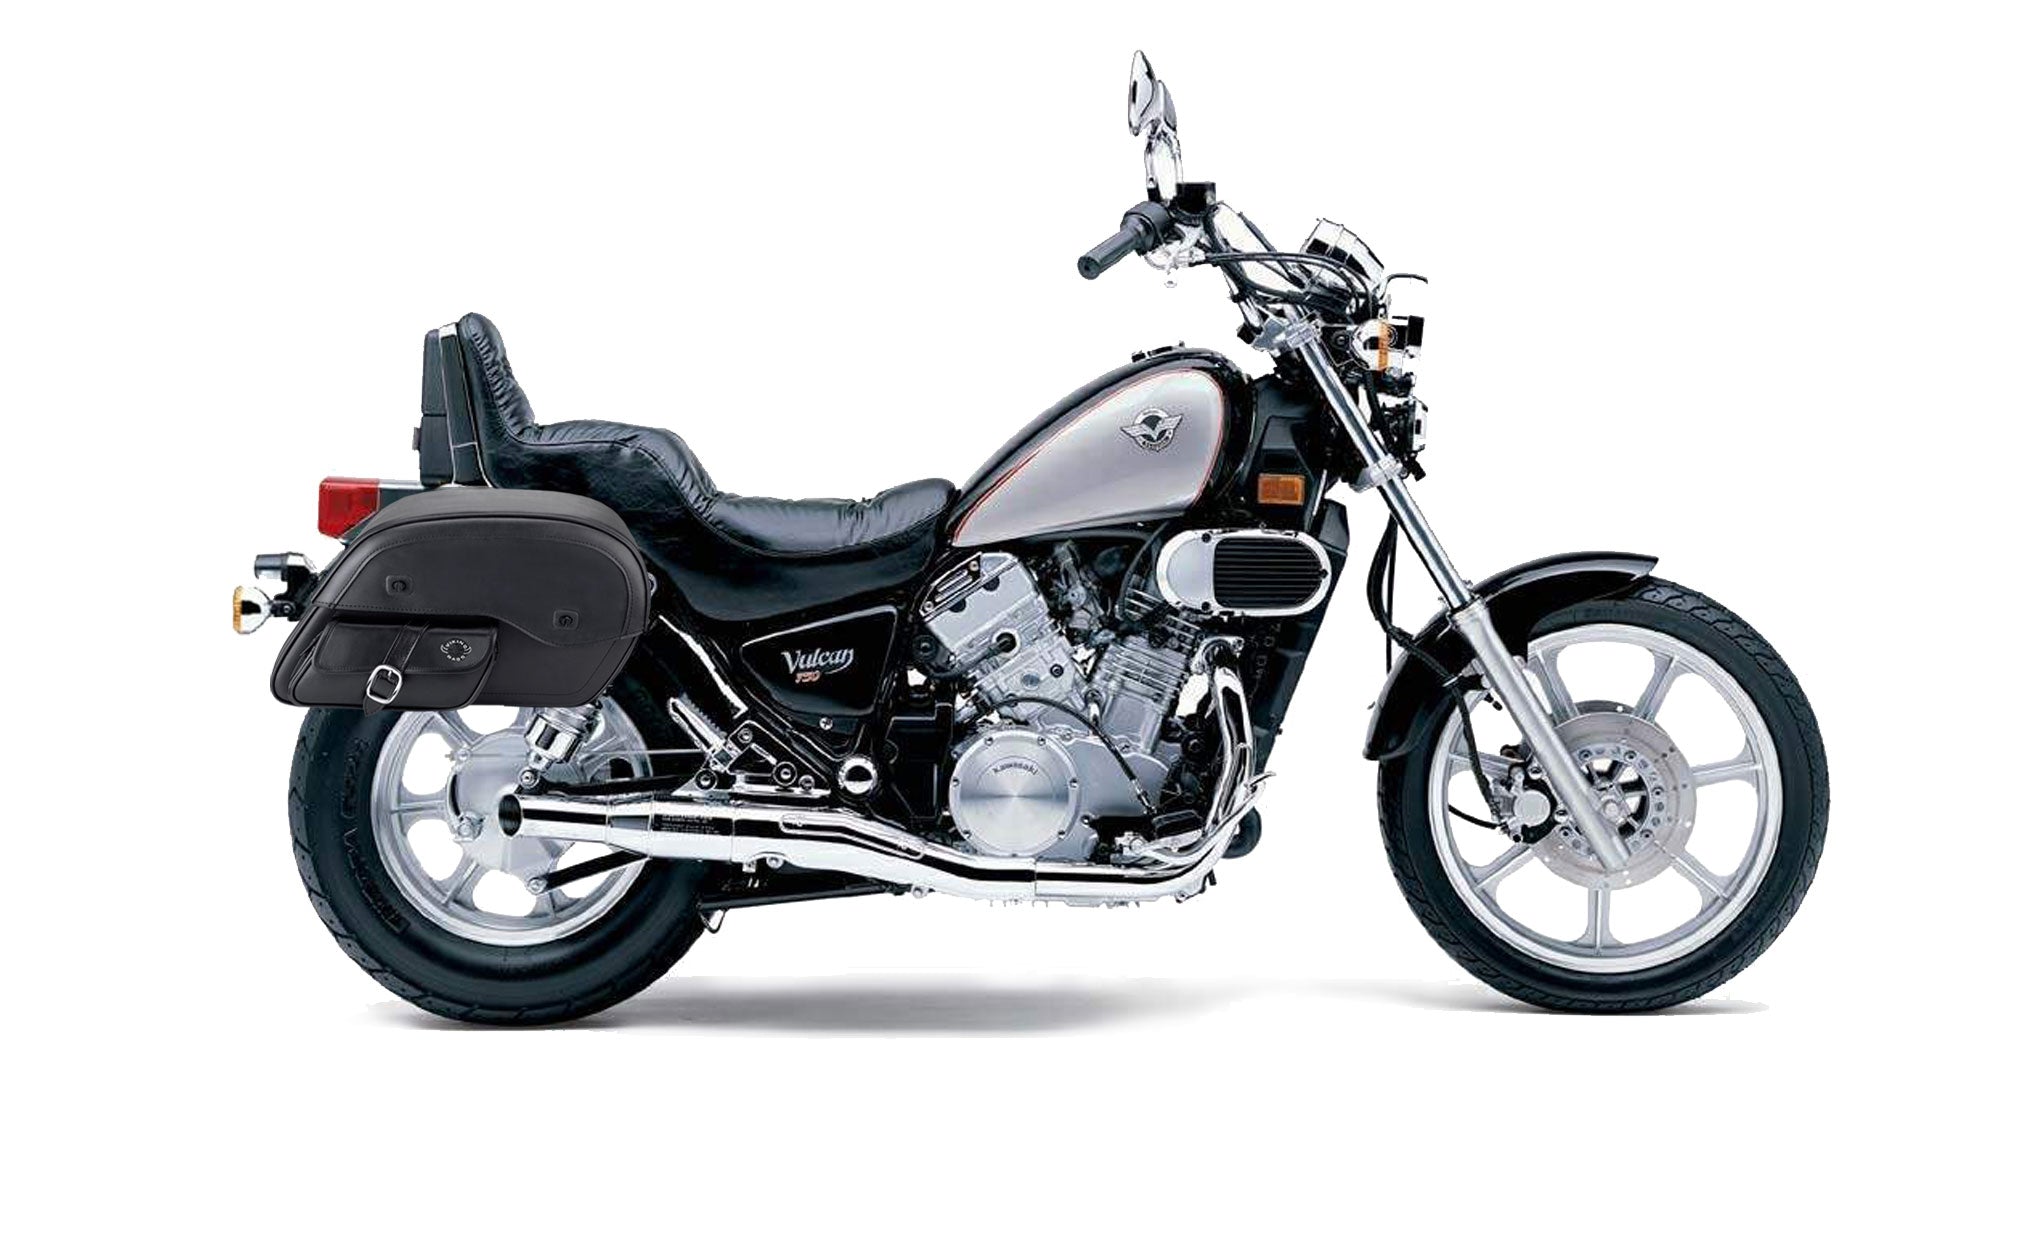 Viking Dweller Side Pocket Large Kawasaki Vulcan 750 Vn750 Leather Motorcycle Saddlebags on Bike Photo @expand